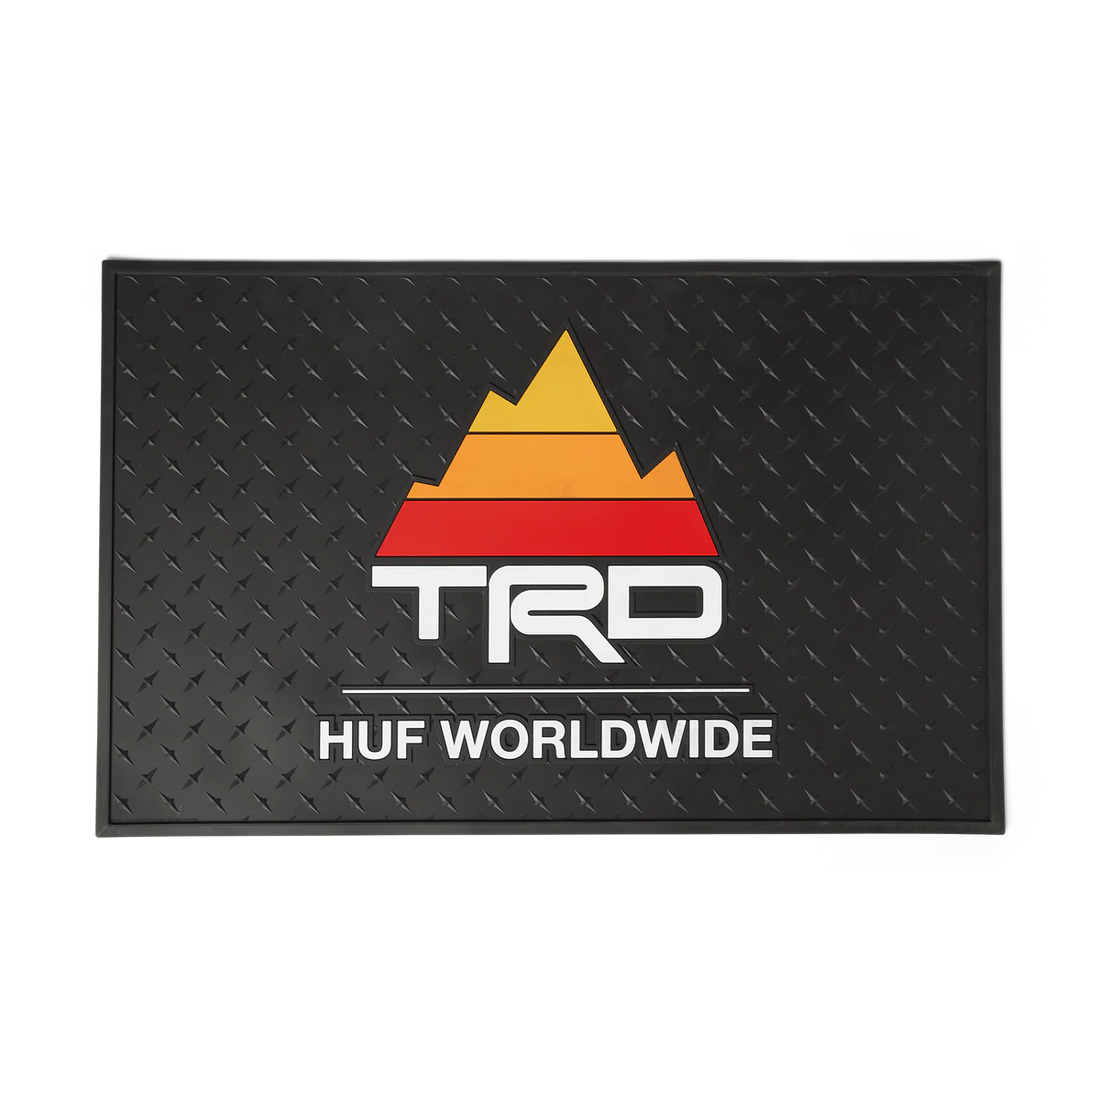 Huf TRD Rubber Mat (Black)